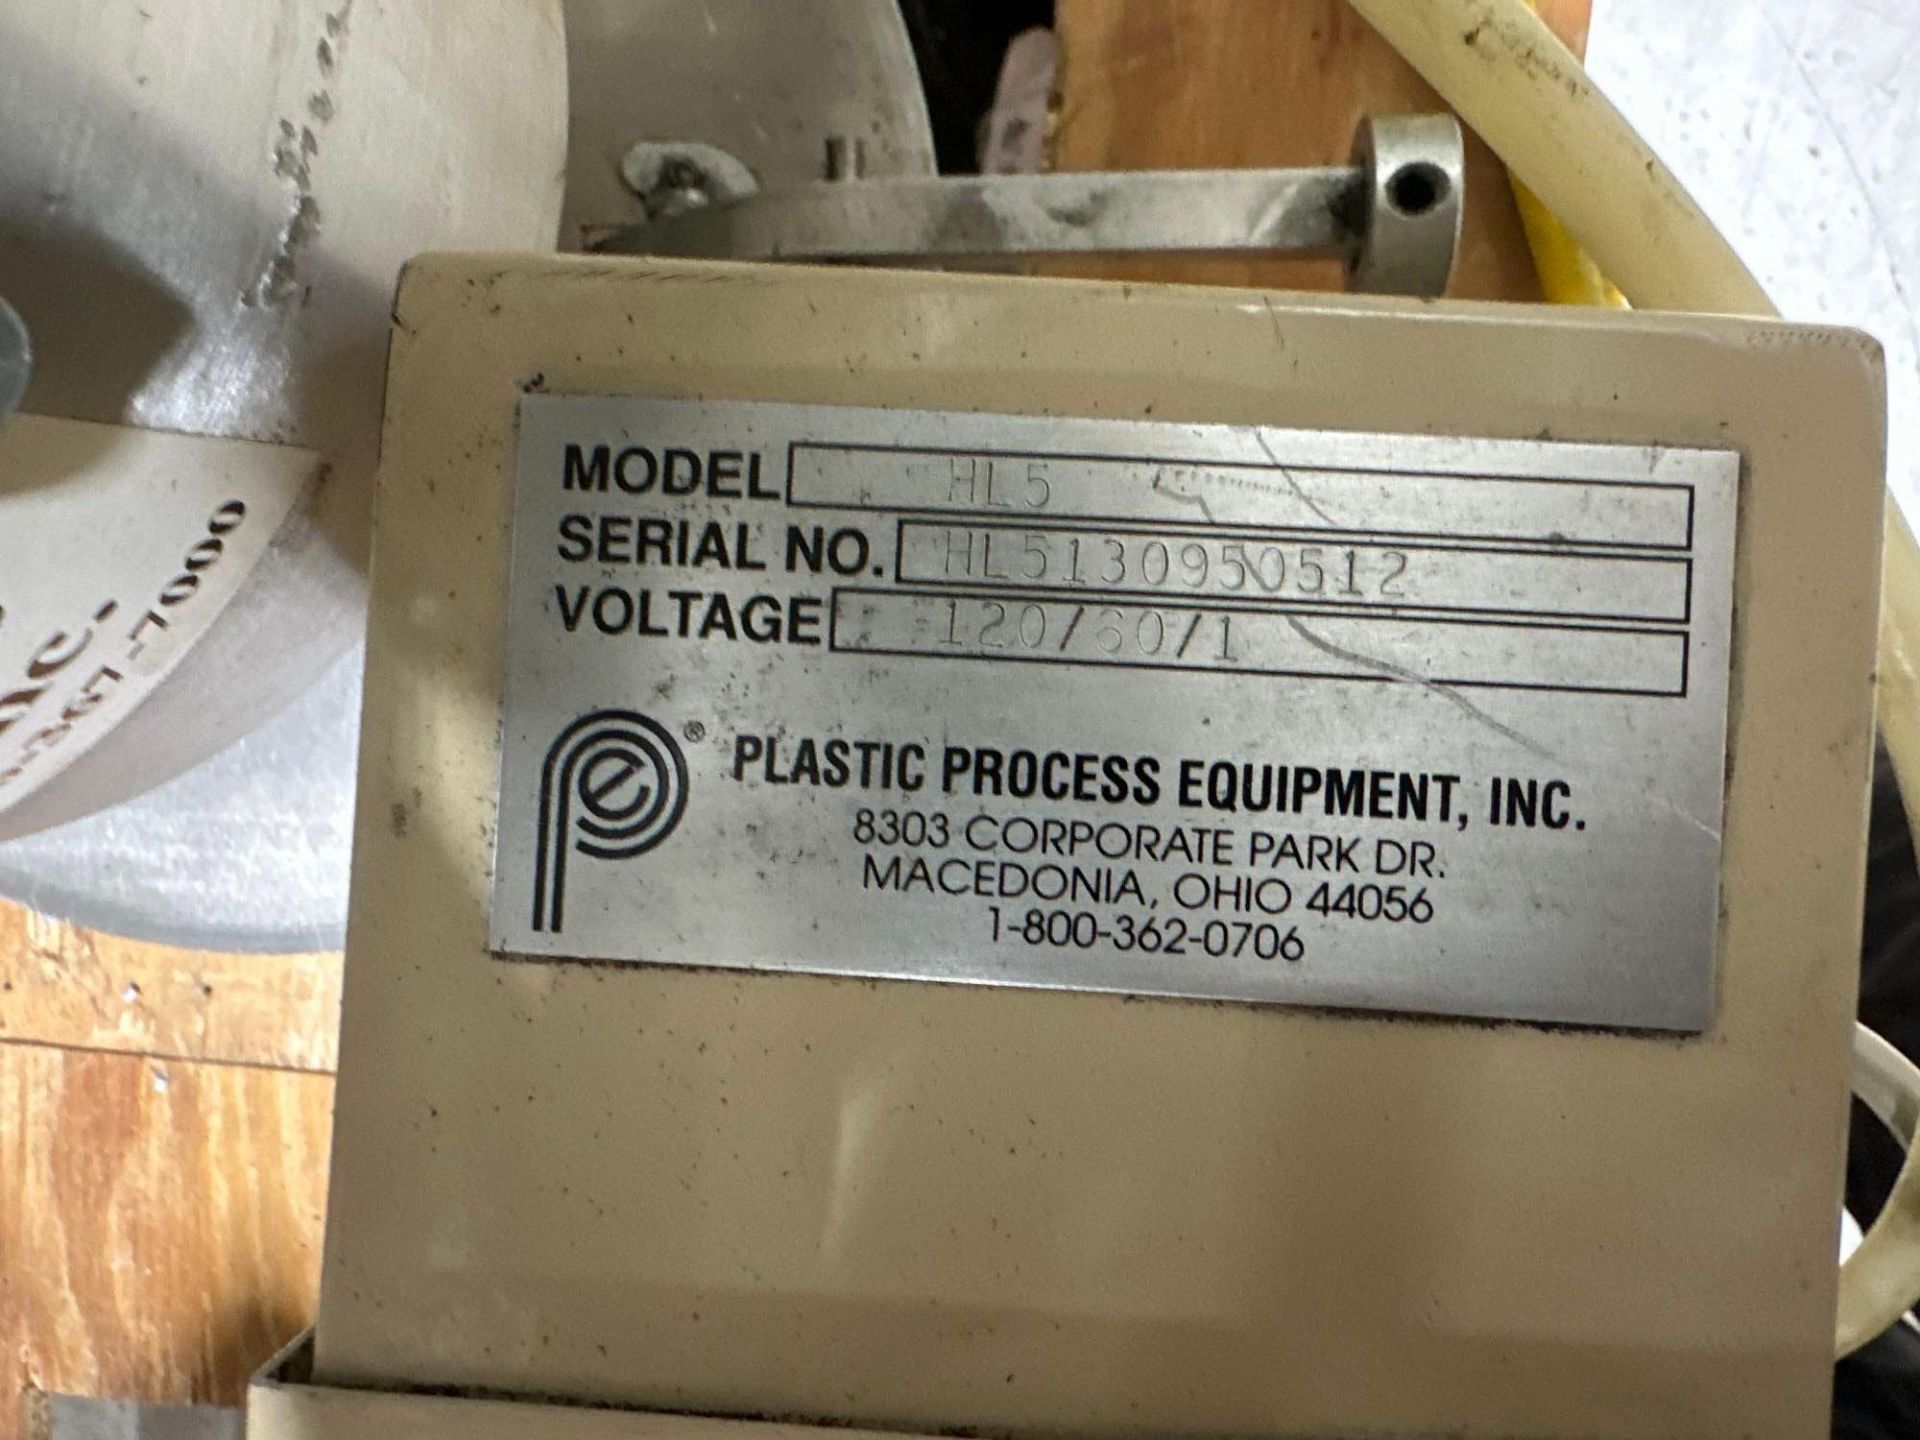 Plastic Process Equipment HL5 Material Loader, s/n HL5130950512 - Image 4 of 4